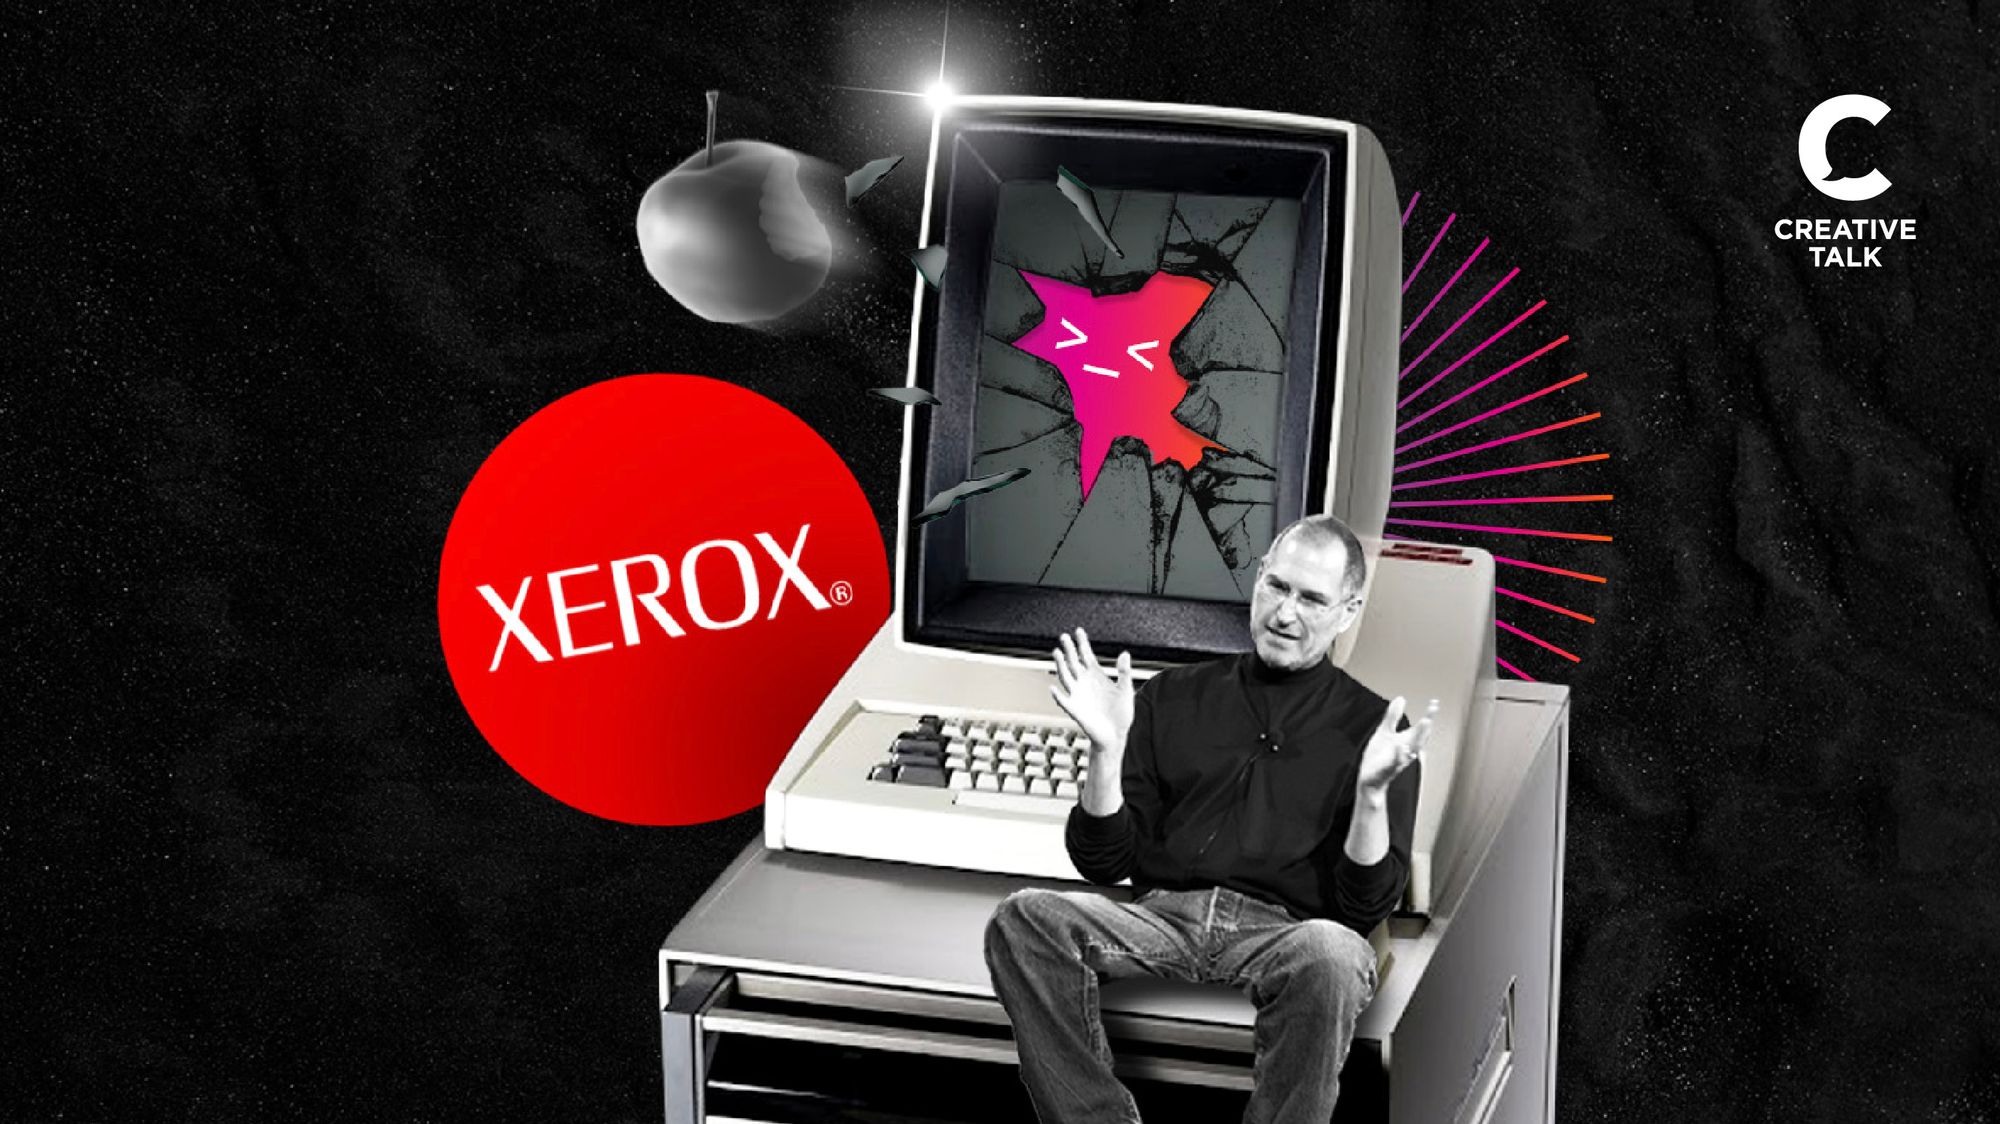 ‘กำลังจะพุ่ง แต่โดนจอบส์สกัดดาวรุ่งซะก่อน’ Xerox Alto เครื่อง PC ตัวแรกที่โลกไม่เคยจำ เพราะวิสัยทัศน์ของผู้นำ